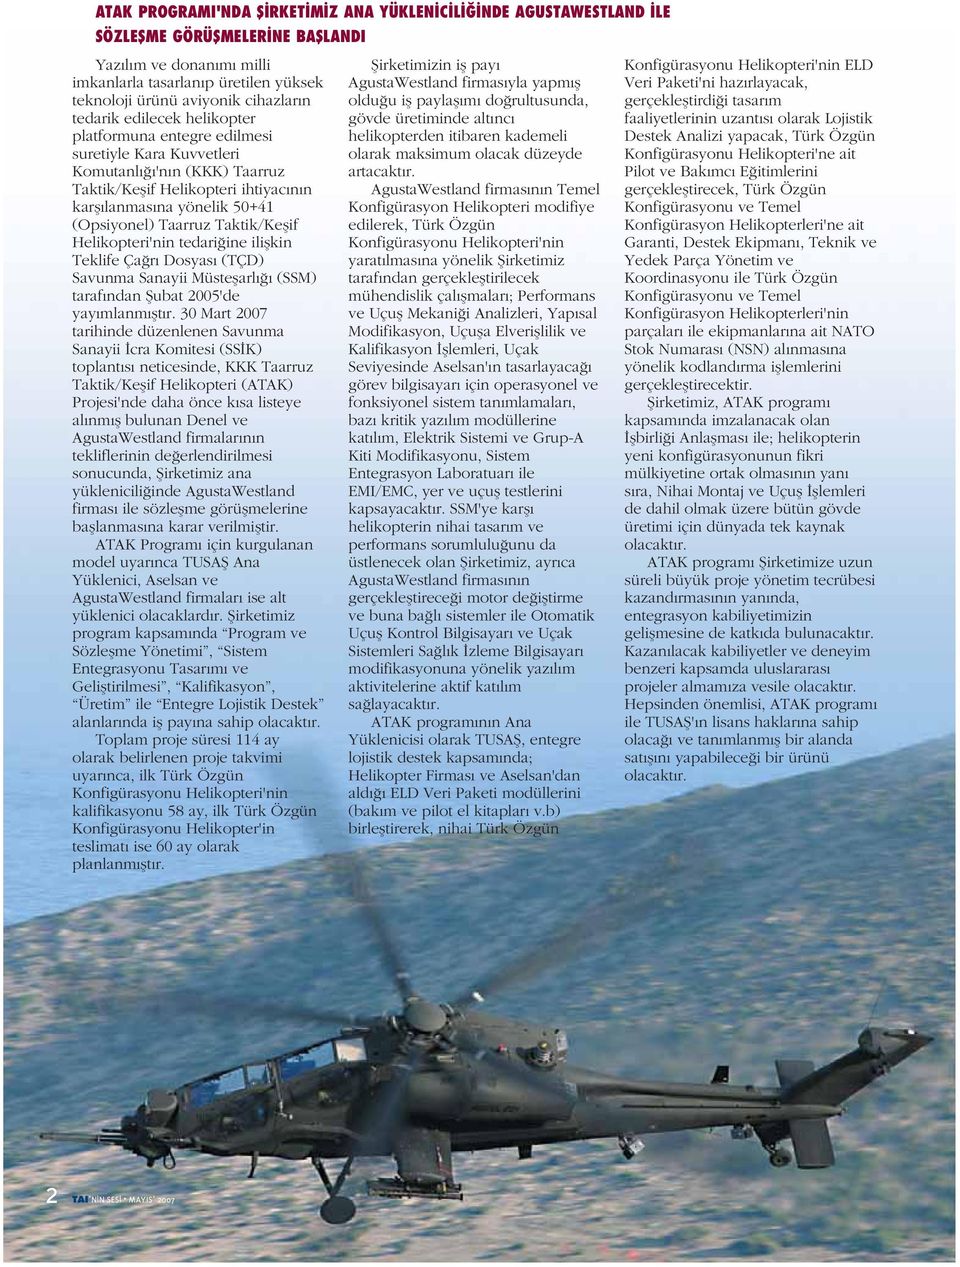 (Opsiyonel) Taarruz Taktik/Keşif Helikopteri'nin tedariğine ilişkin Teklife Çağrı Dosyası (TÇD) Savunma Sanayii Müsteşarlığı (SSM) tarafından Şubat 2005'de yayımlanmıştır.